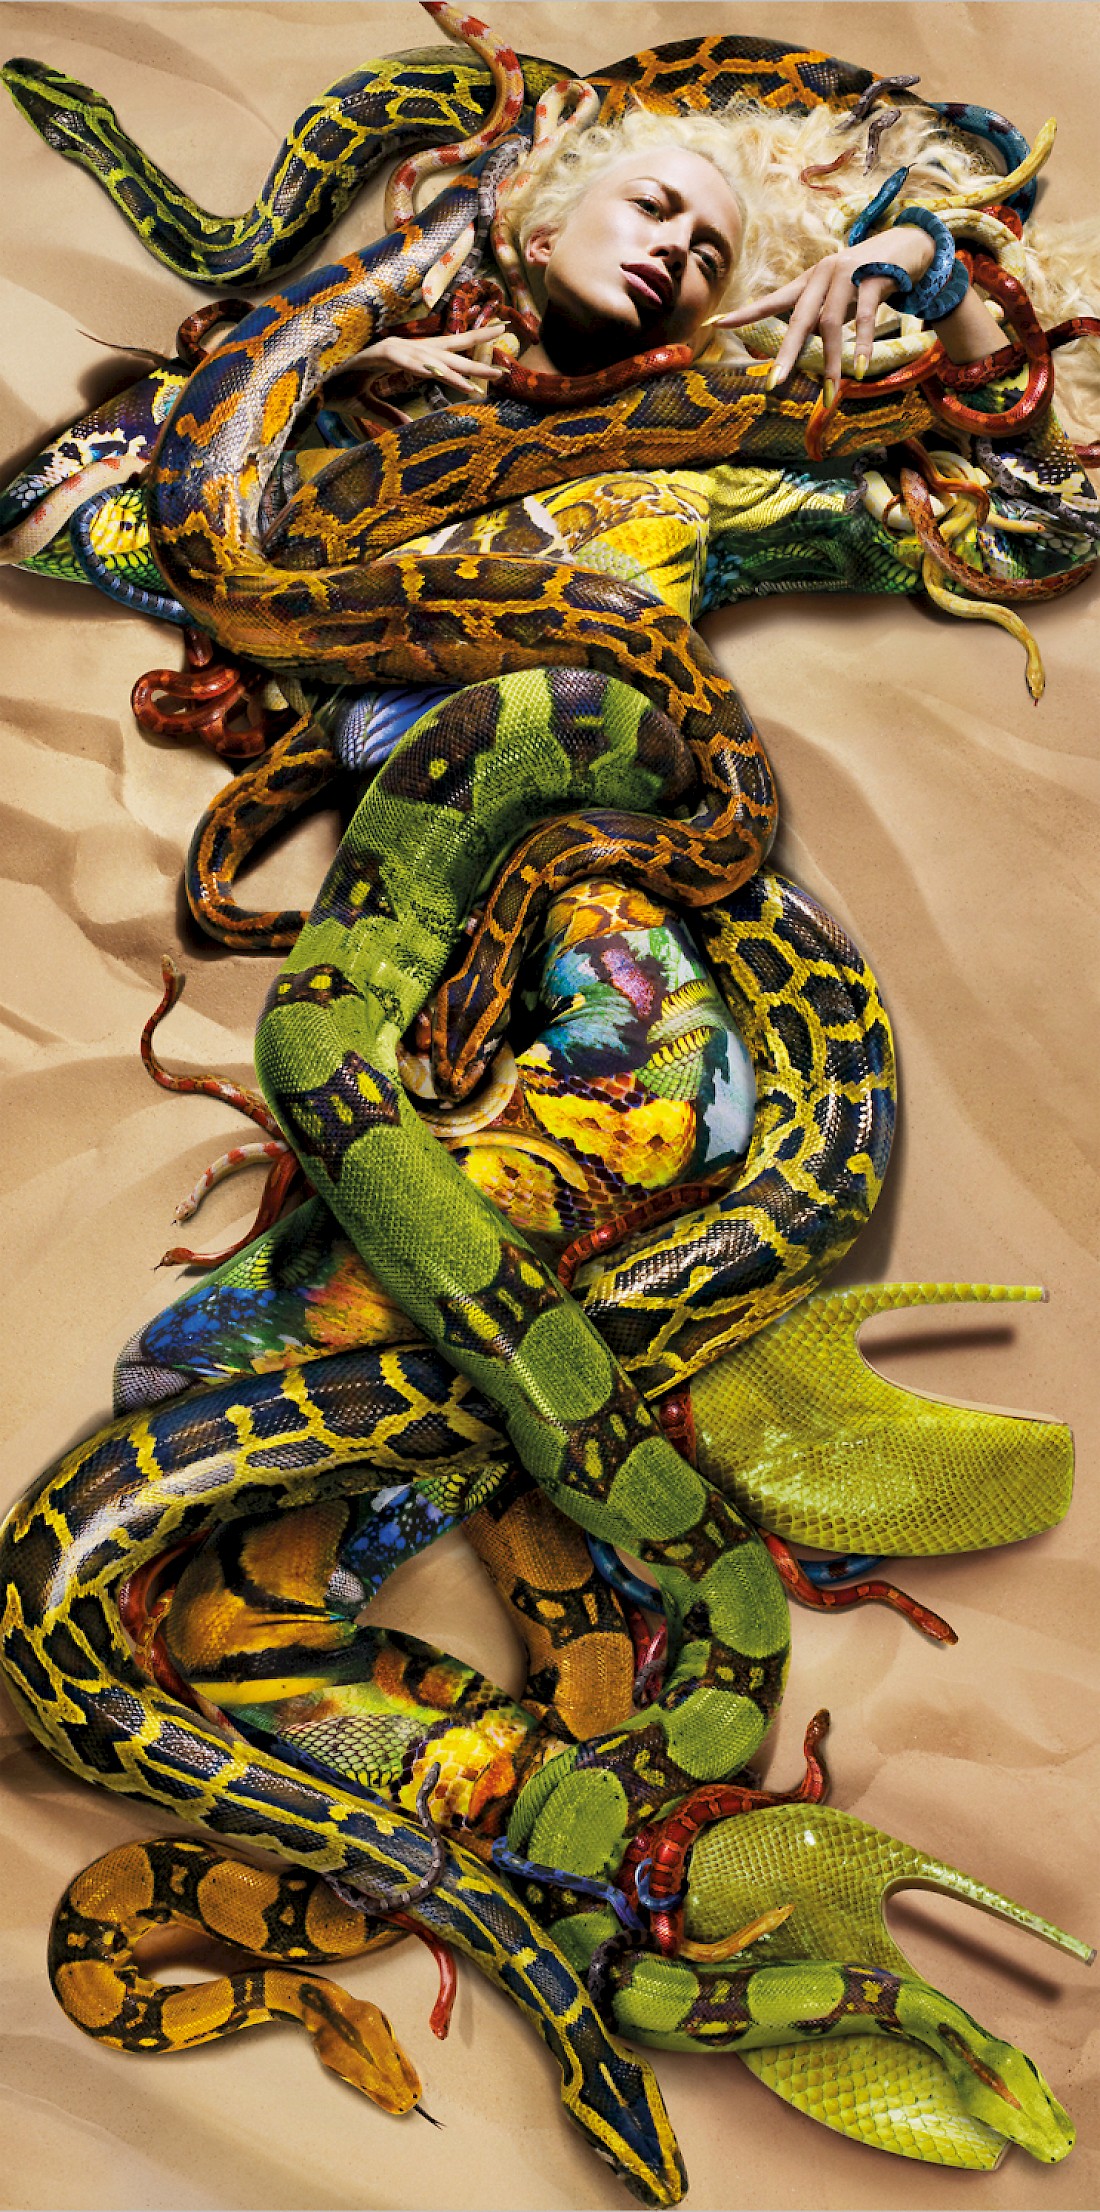 Snakes, Raquel Zimmermann for Alexander McQueen, 2009